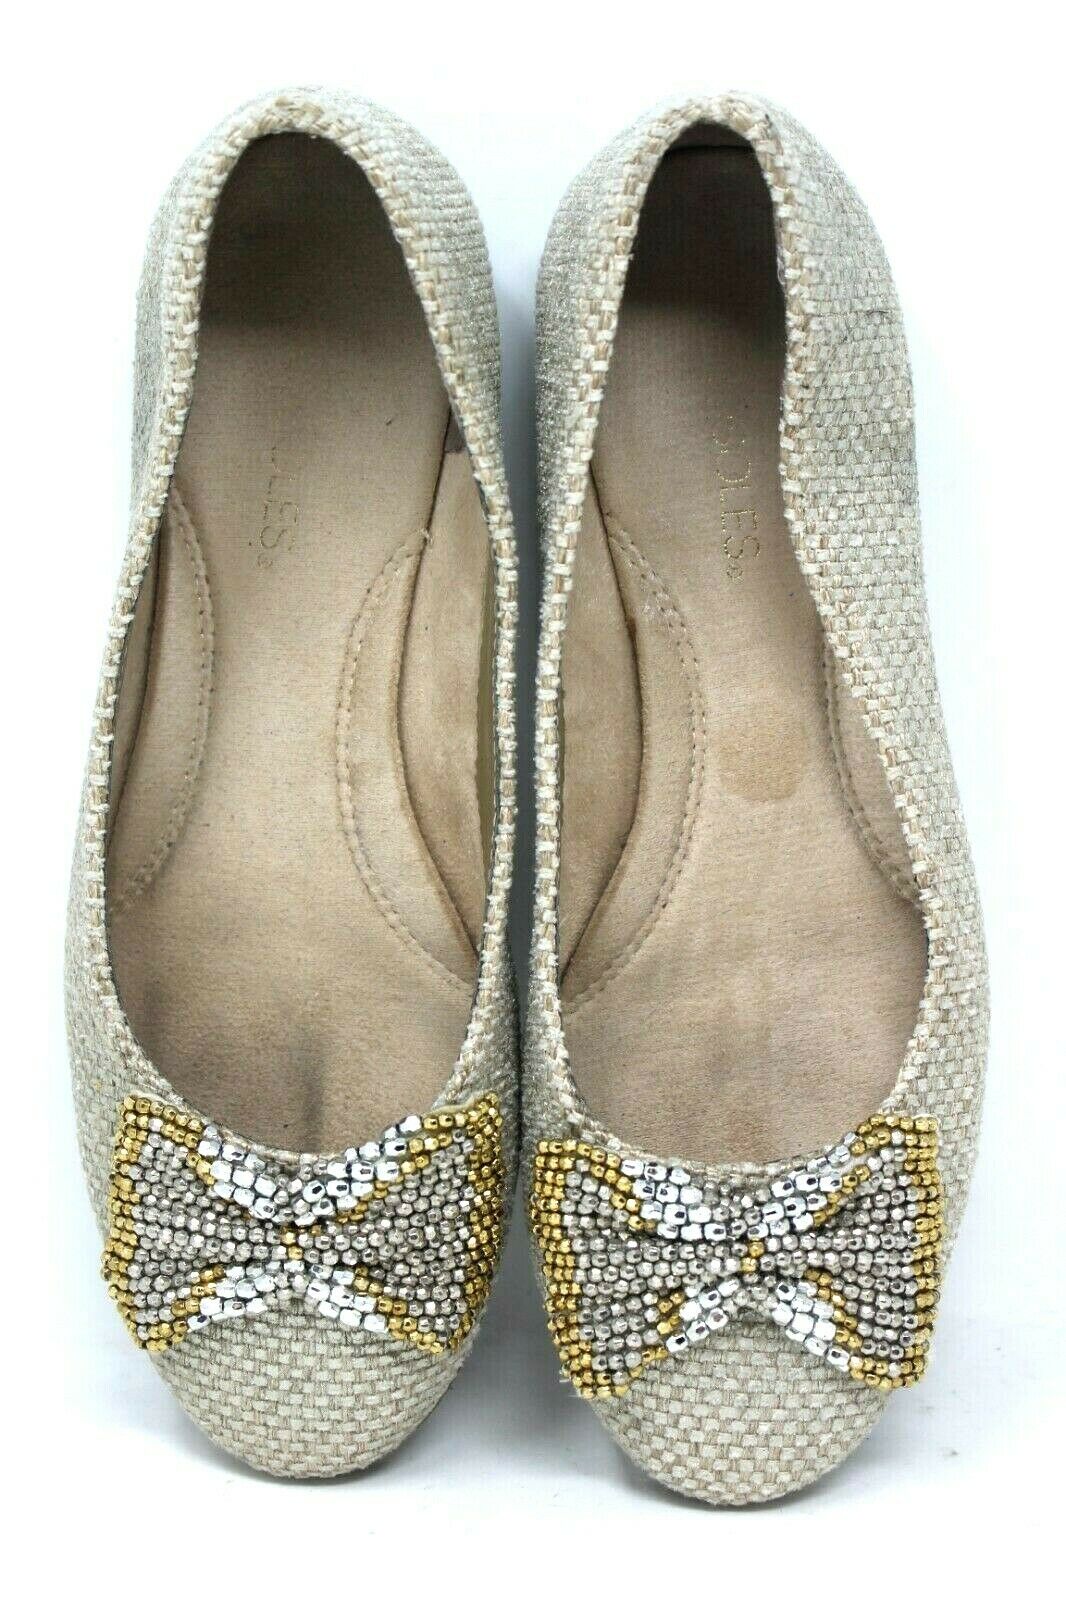 Aerosoles Ballet Flats Women 8 M Impeccable Shoes Tan Jute Silver Gold Bow #8-4